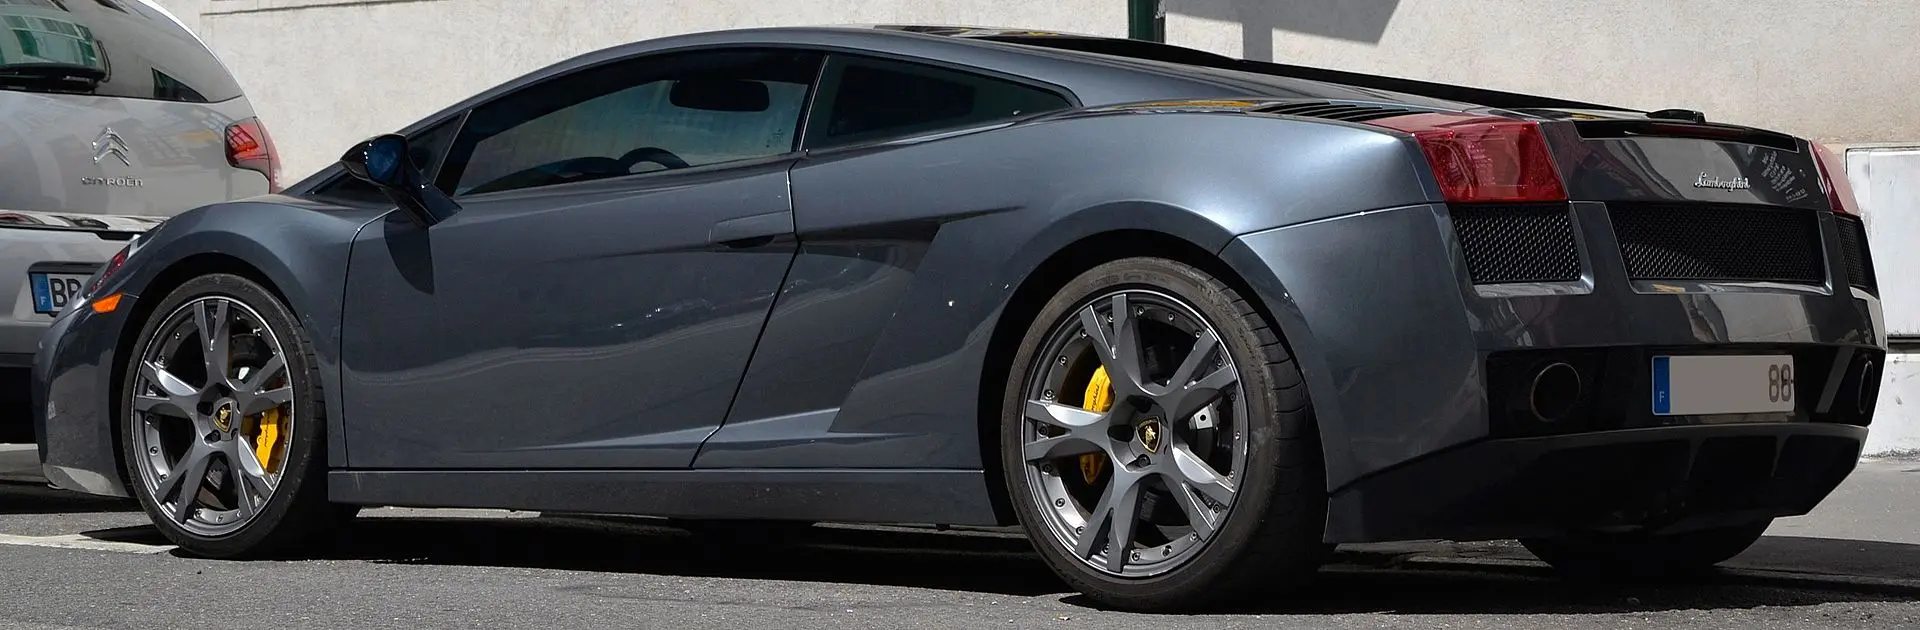 Lamborghini Gallardo Se